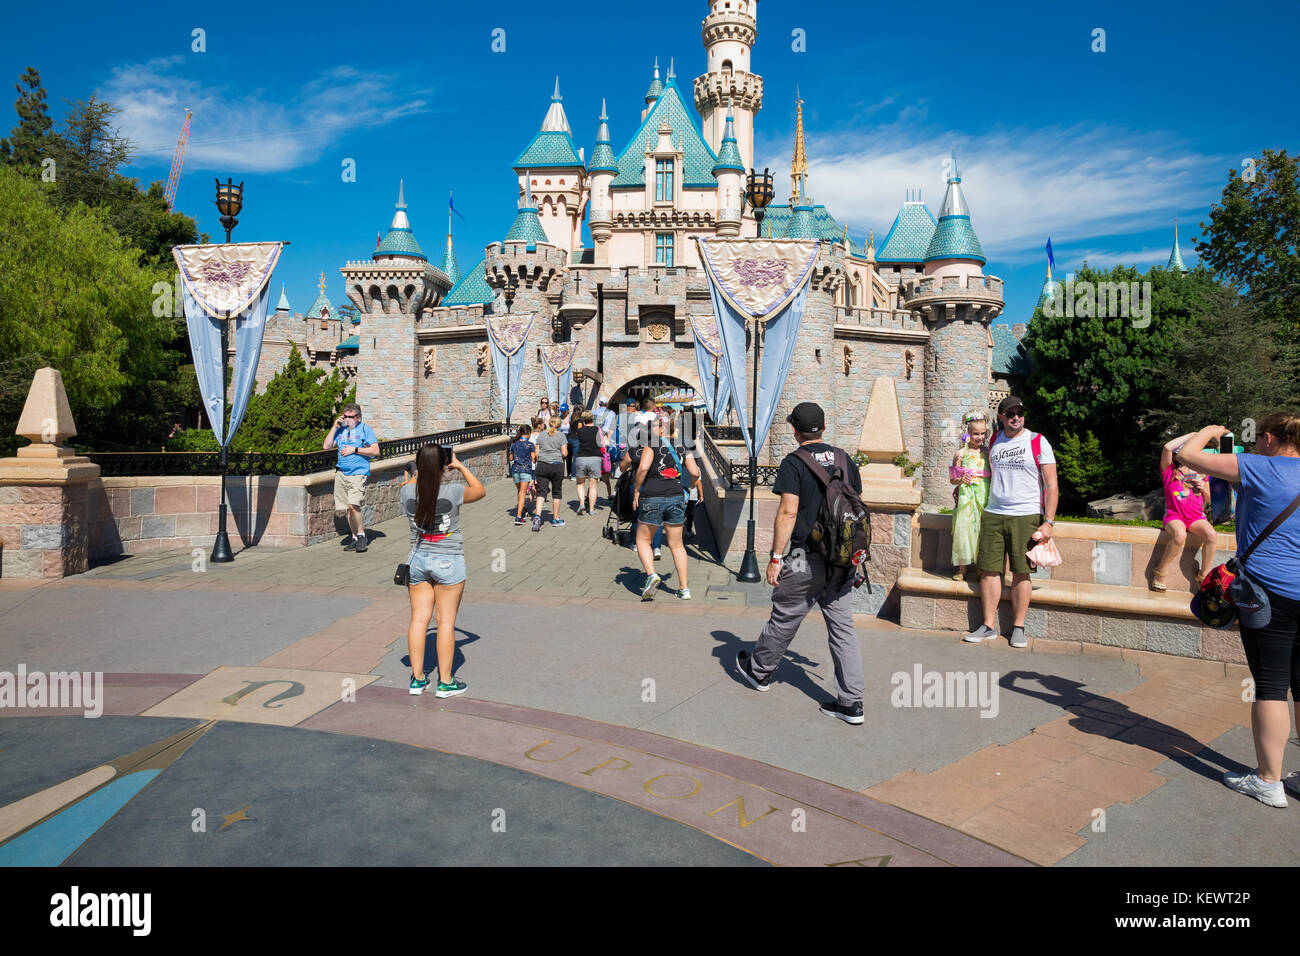 Anaheim, Ca - 16. Oktober 2017: die Gäste zu Fuß durch das Wahrzeichen schloss im Disneyland Theme Park Resort in Kalifornien. Stockfoto